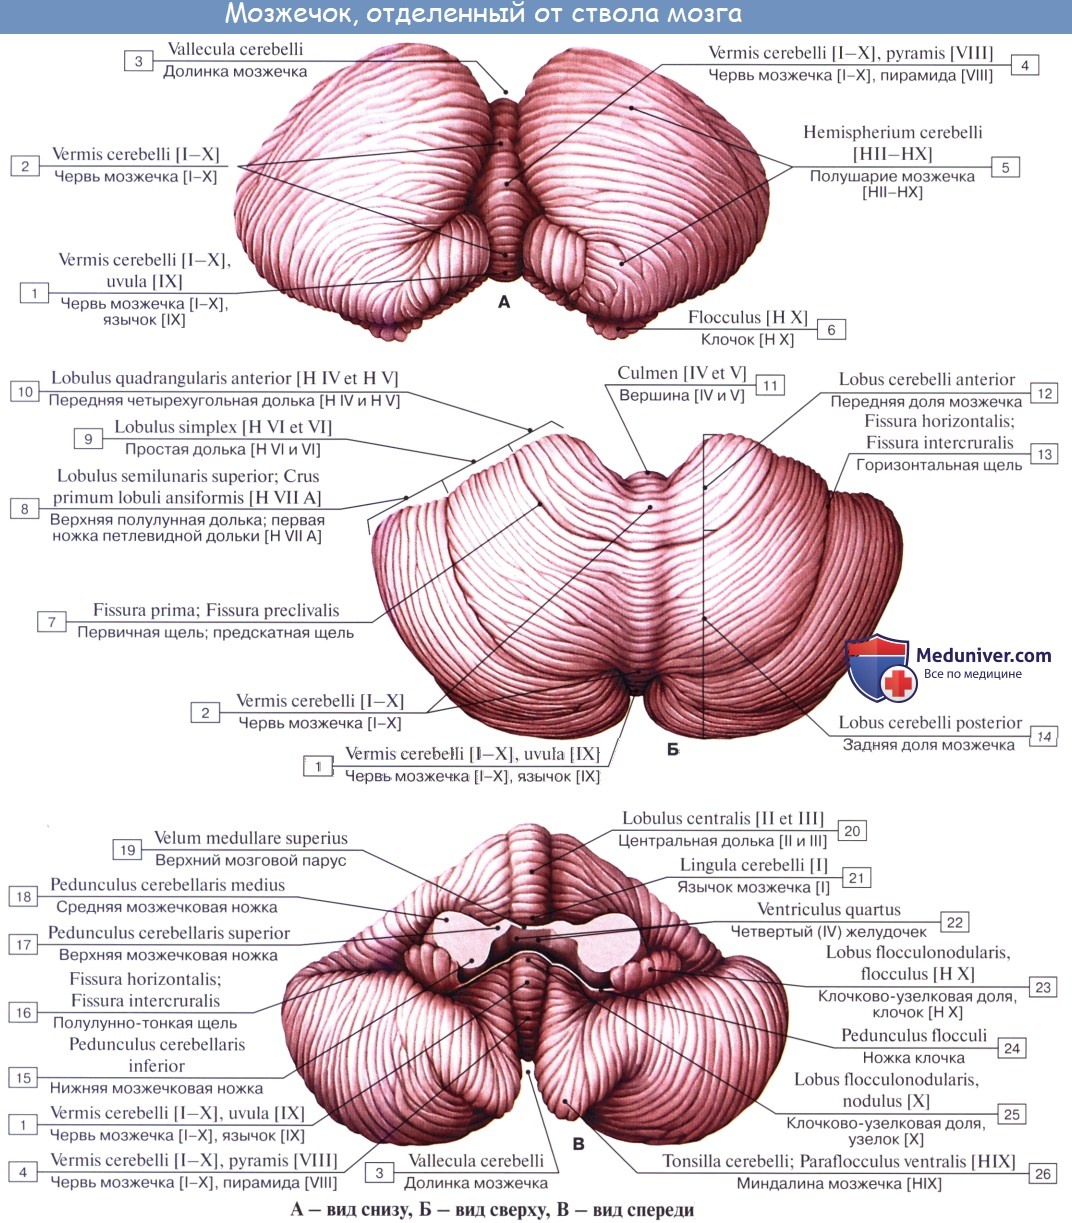 anatomia mozgechka 3a